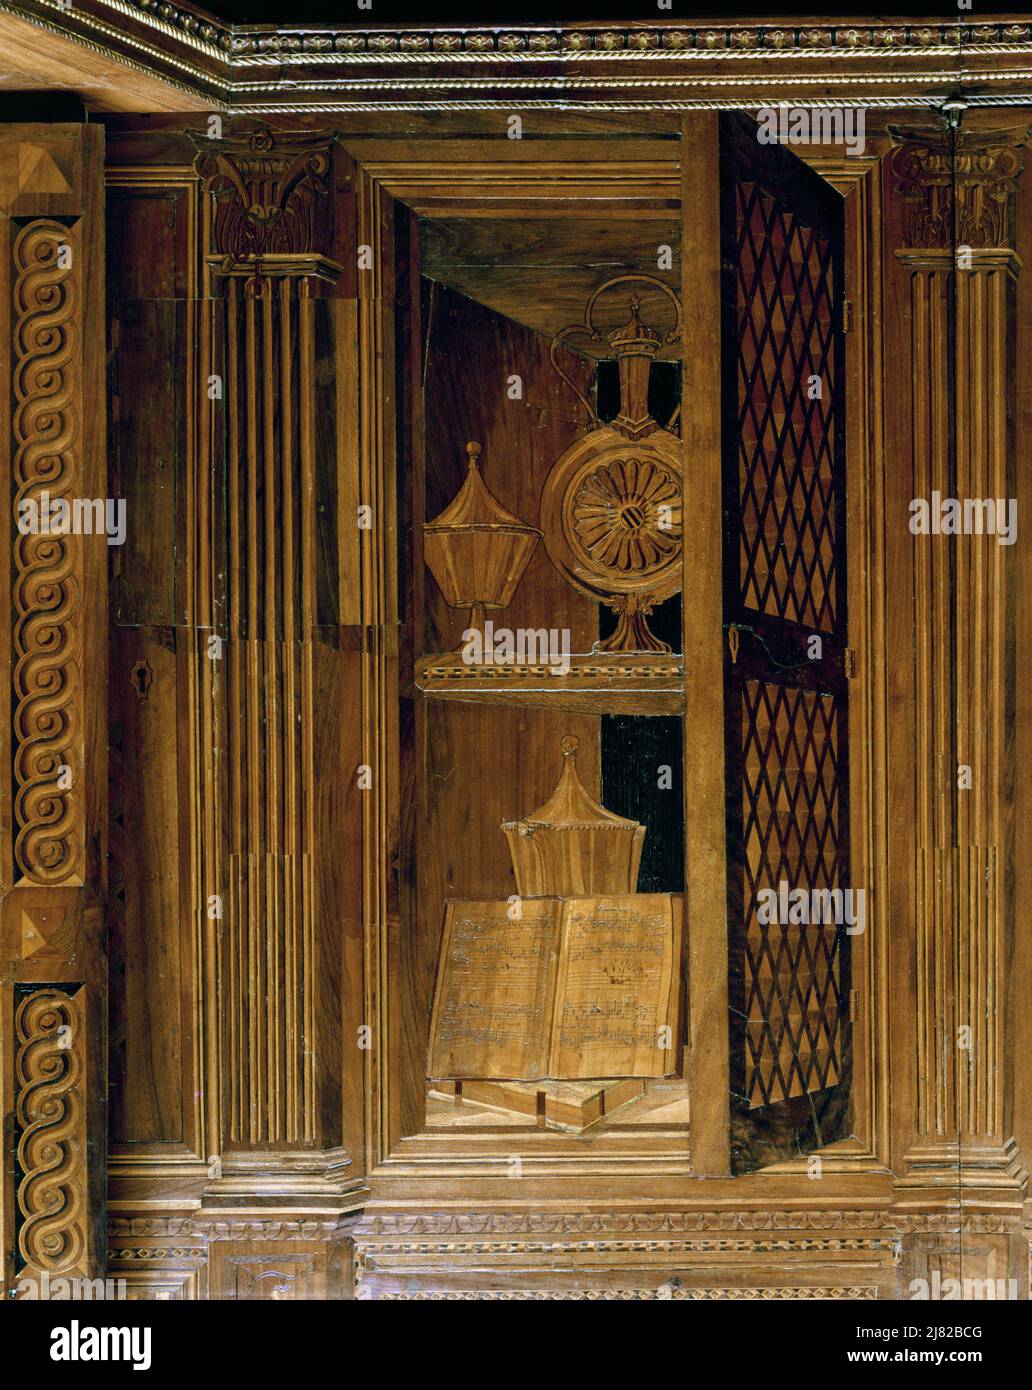 Intarsientäfelung mit einem Schrank mit Gittertür, in der Studie von  Federigo da Montefeltro, Herzog von Urbino (Holz) von Pontelli, Bacio (um  1450-92); Palazzo Ducale, Urbino, Italien; Italienisch, nicht  urheberrechtlich geschützt Stockfotografie - Alamy